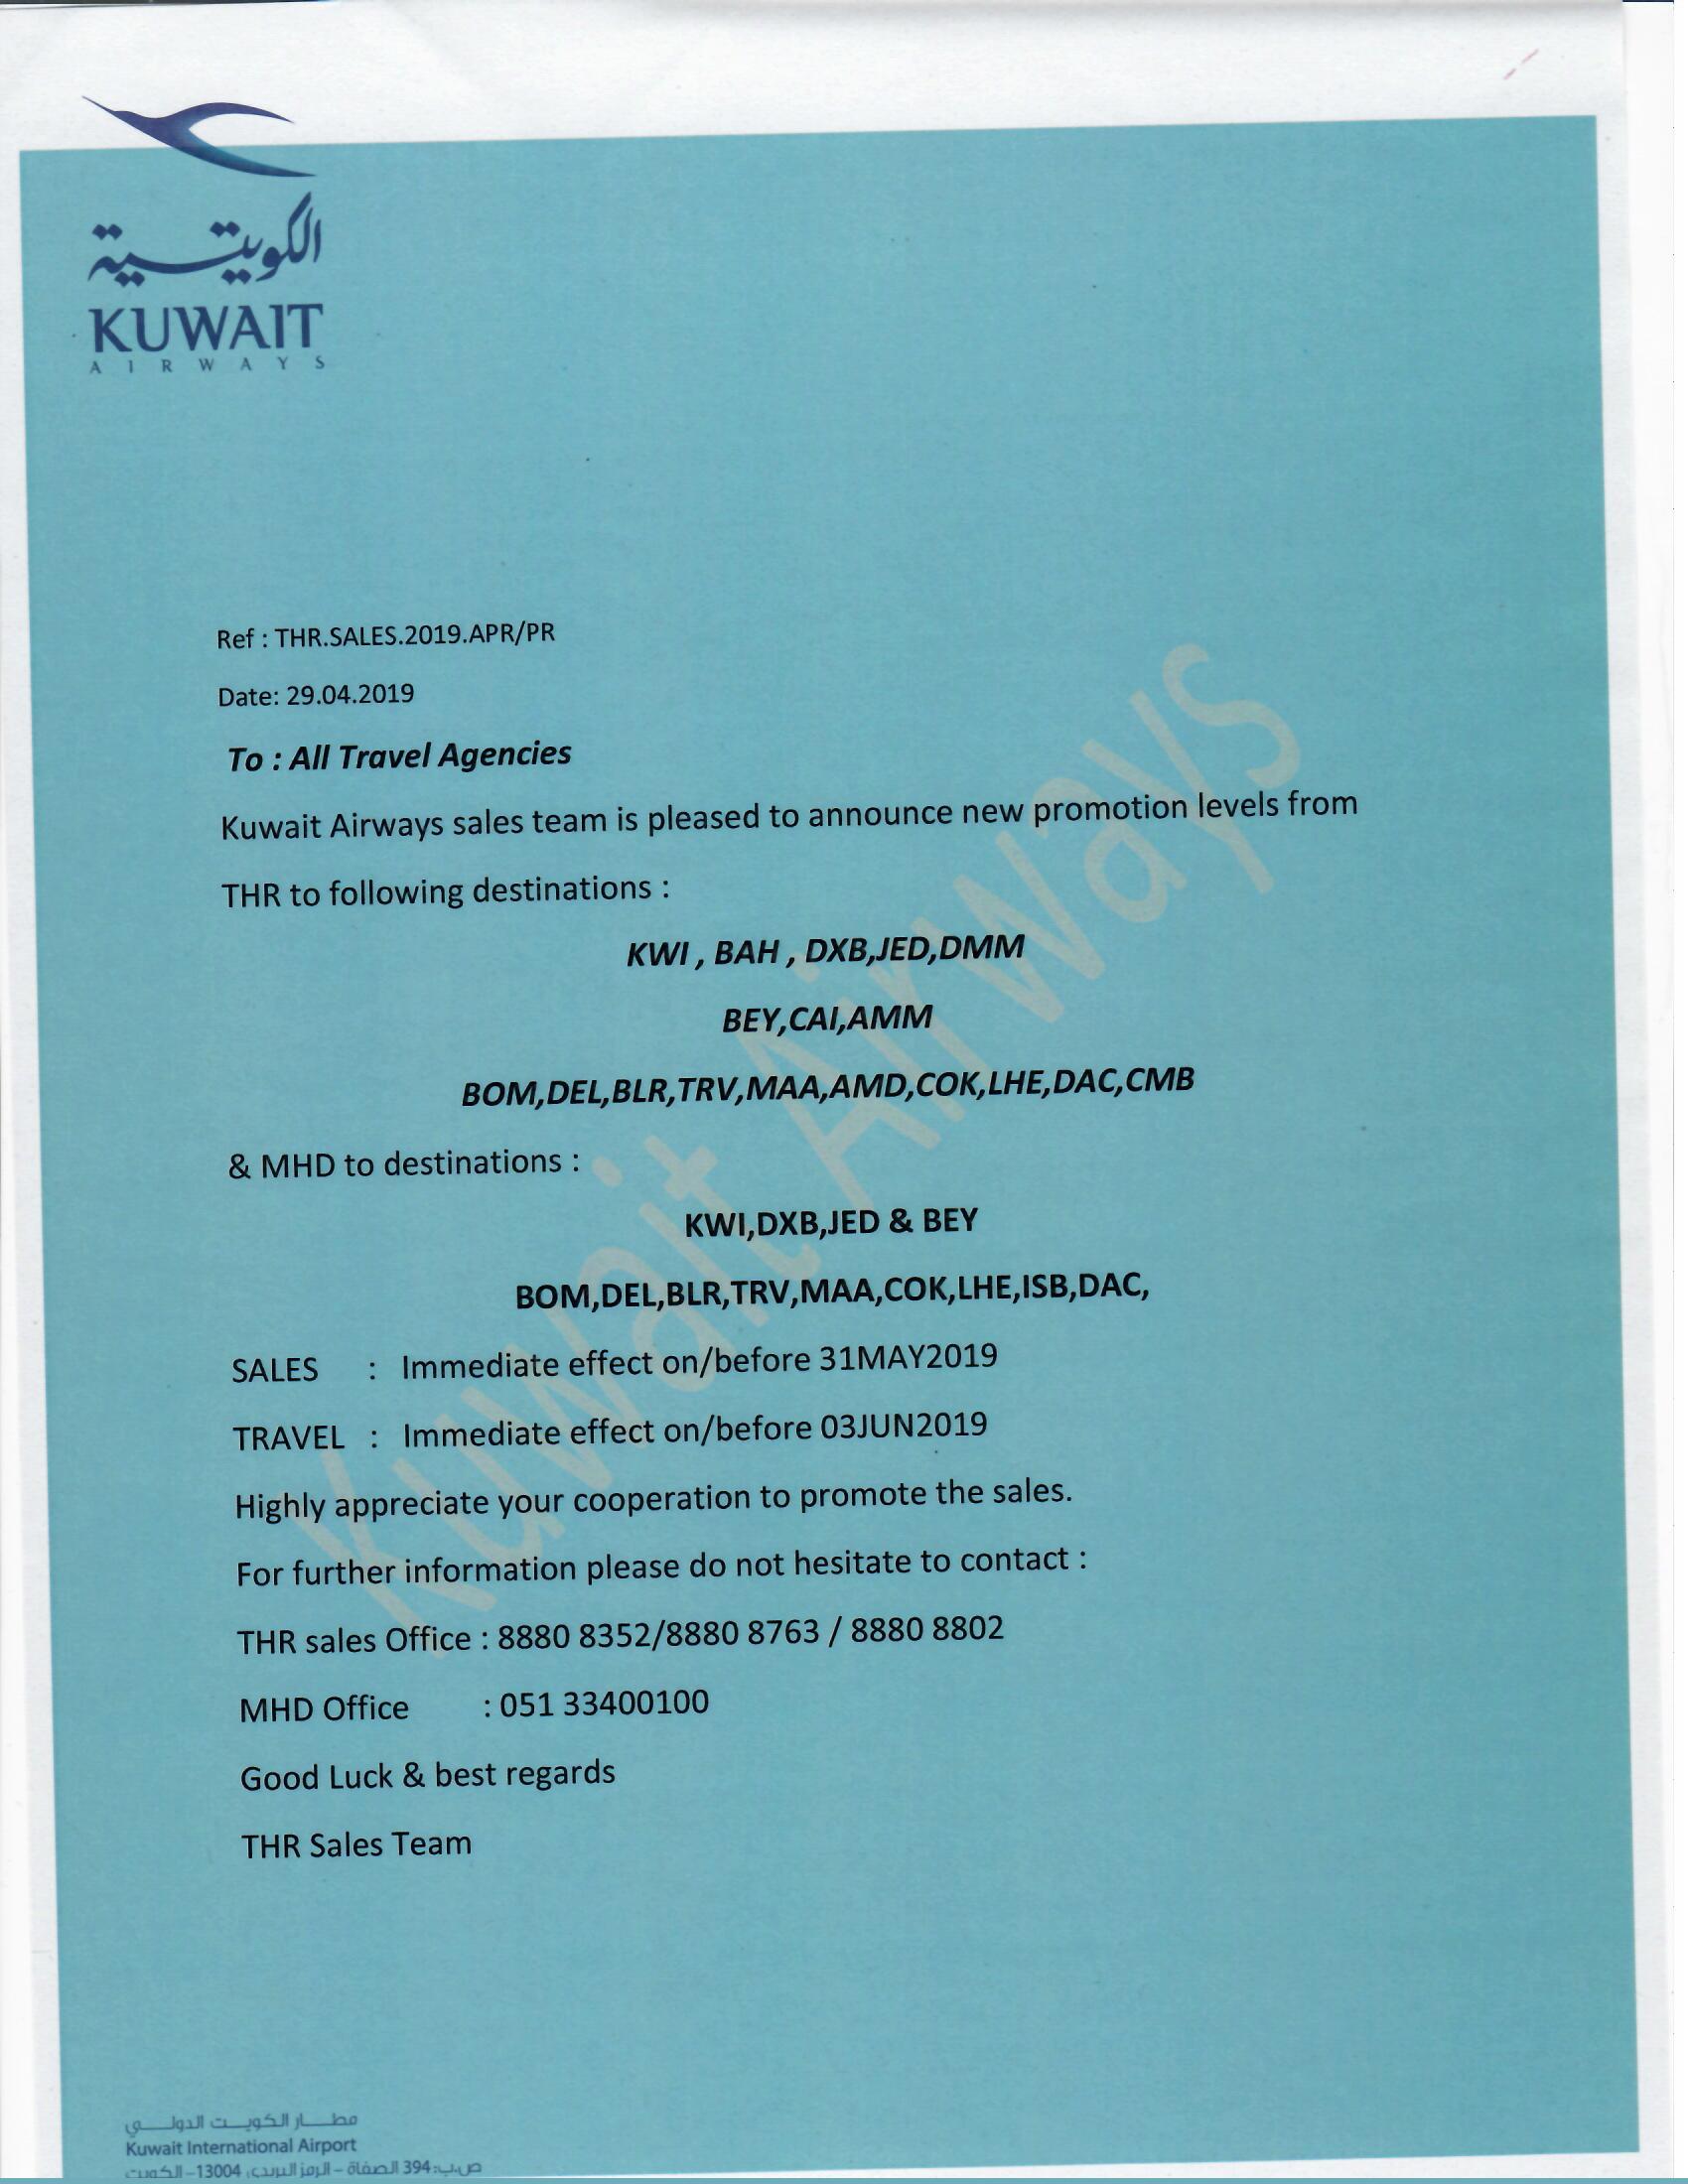 بخشنامه و اطلاعیه   هواپیمایی کویت درباره نرخ های ویژه از تهران به کویت بحرین دبی و ... و از مشهد به کویت دبی بیروت و ... تا تاریخ 31 می 2019